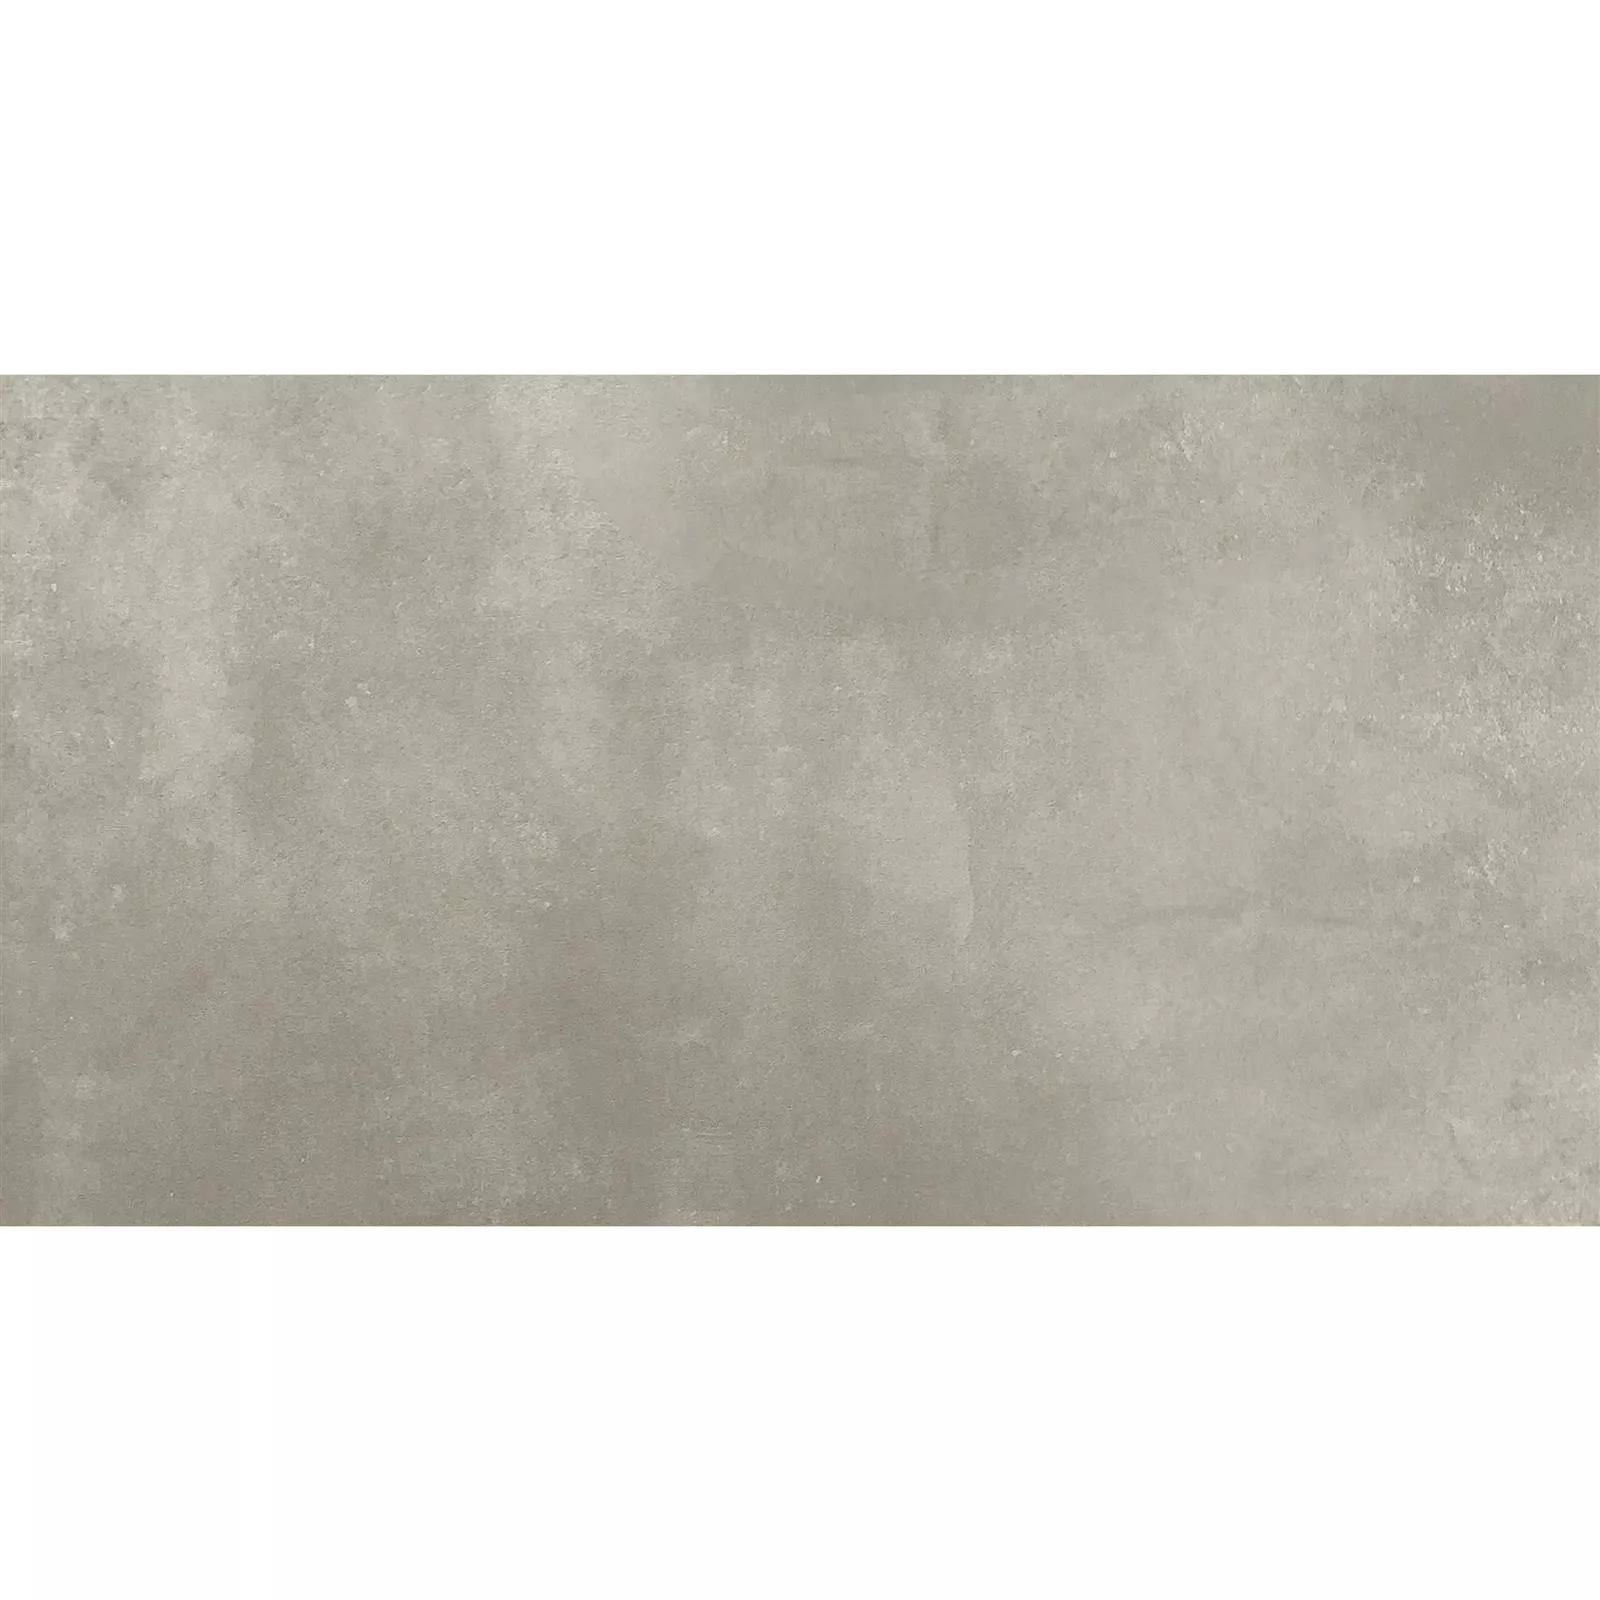 Πρότυπο Πλακάκια Δαπέδου Kolossal Διορθώθηκε R10/B Αμμος 30x60x0,7cm